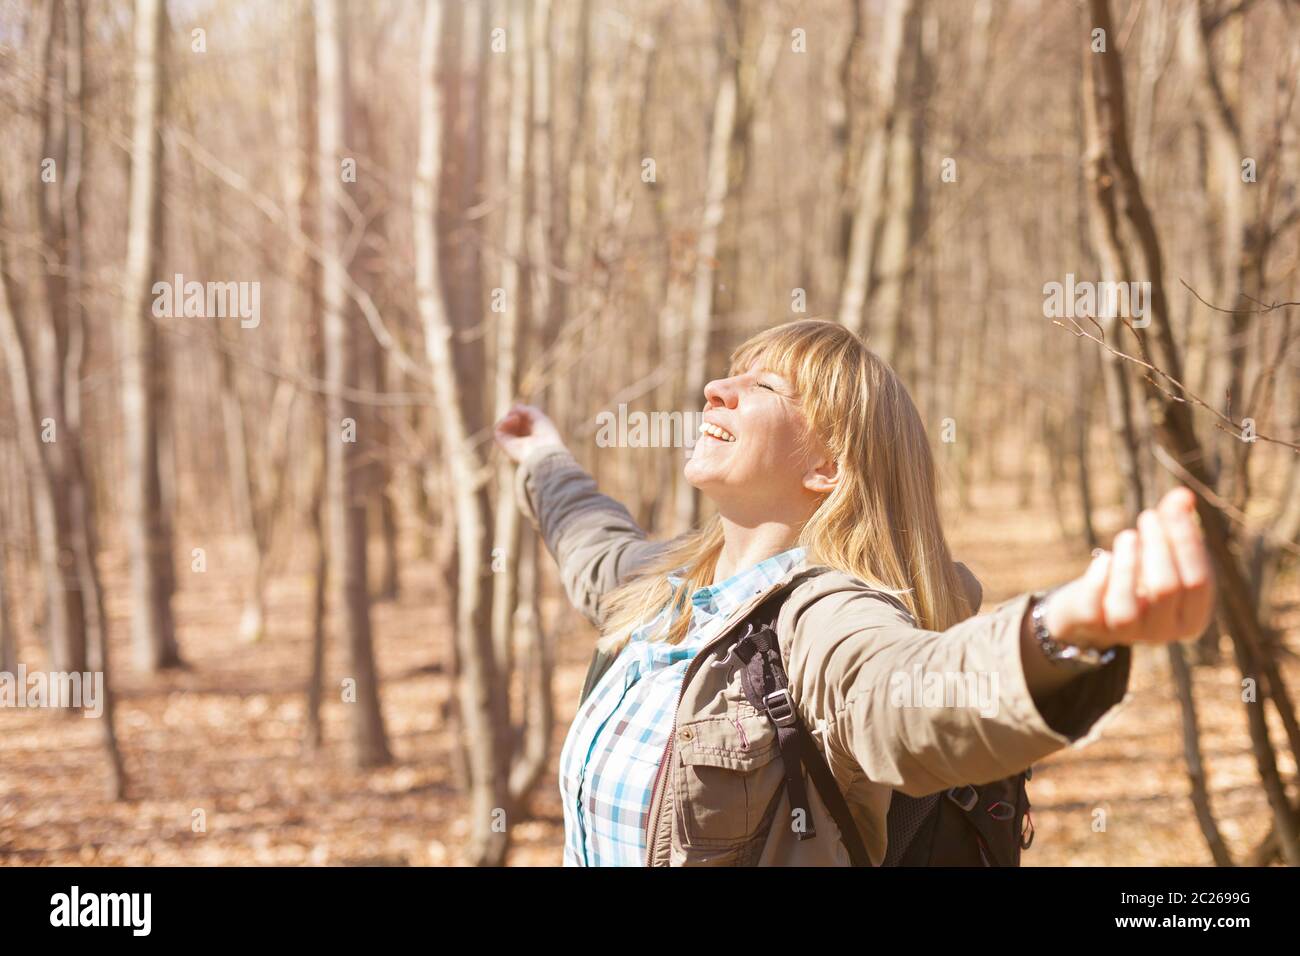 Femme est randonnée et trekking dehors sur une colline. Tourisme, vacances et activité physique concept. Banque D'Images